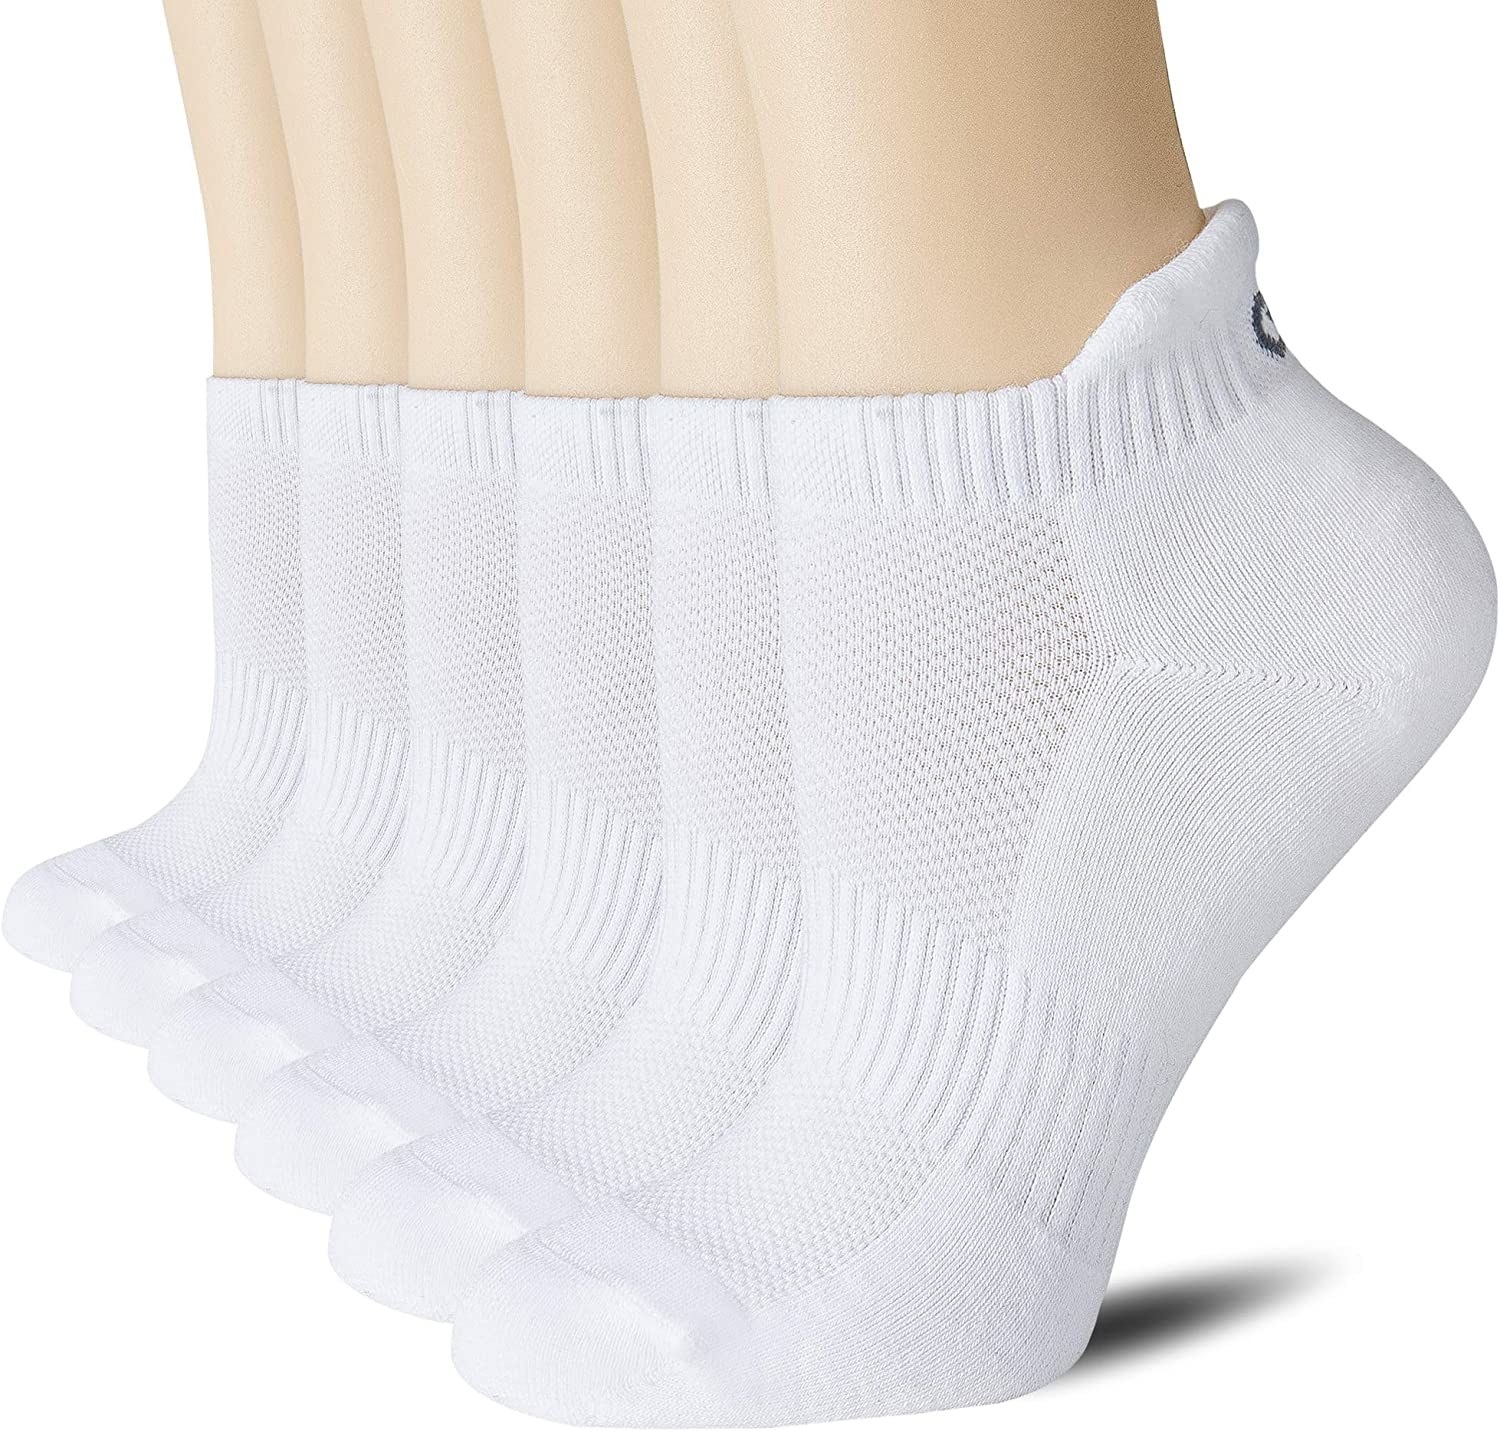 Six feet all wearing the same white socks 